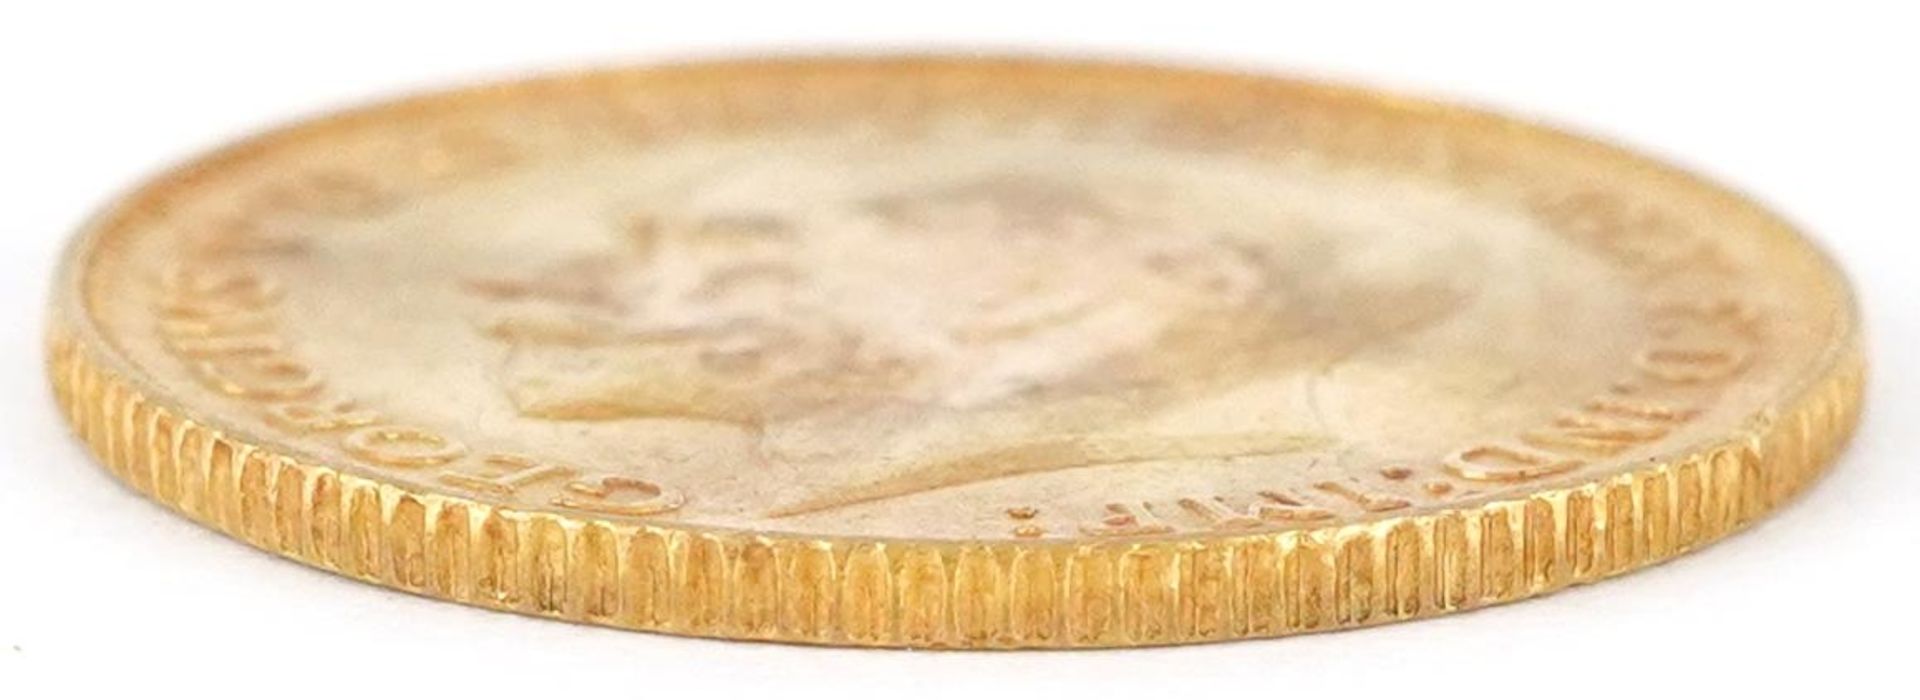 George V 1911 gold half sovereign - Image 3 of 3